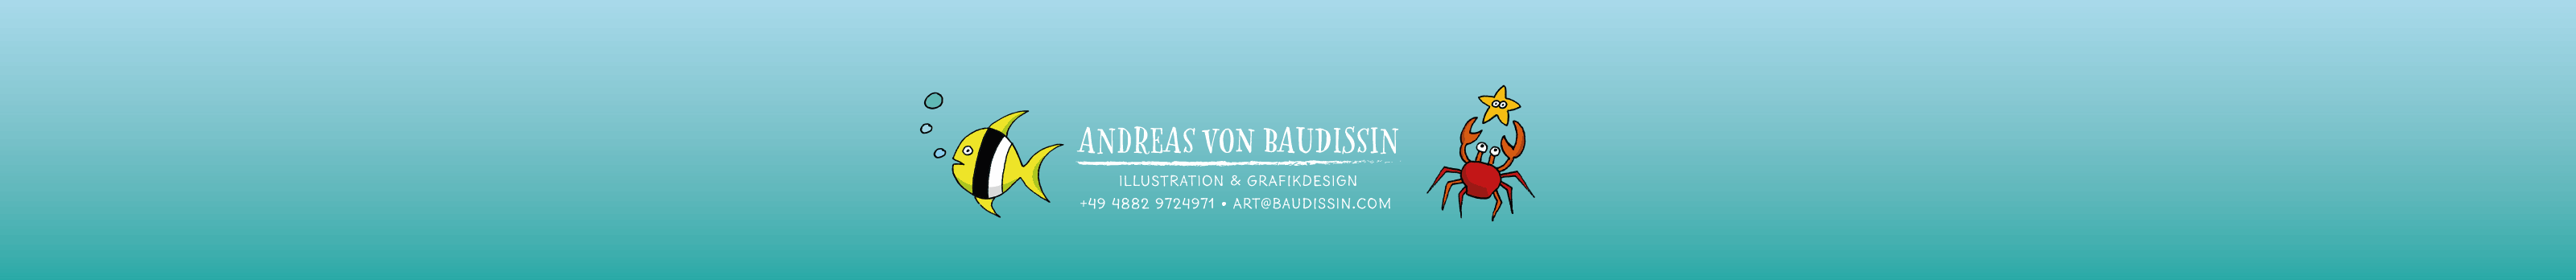 Andreas von Baudissin's profile banner